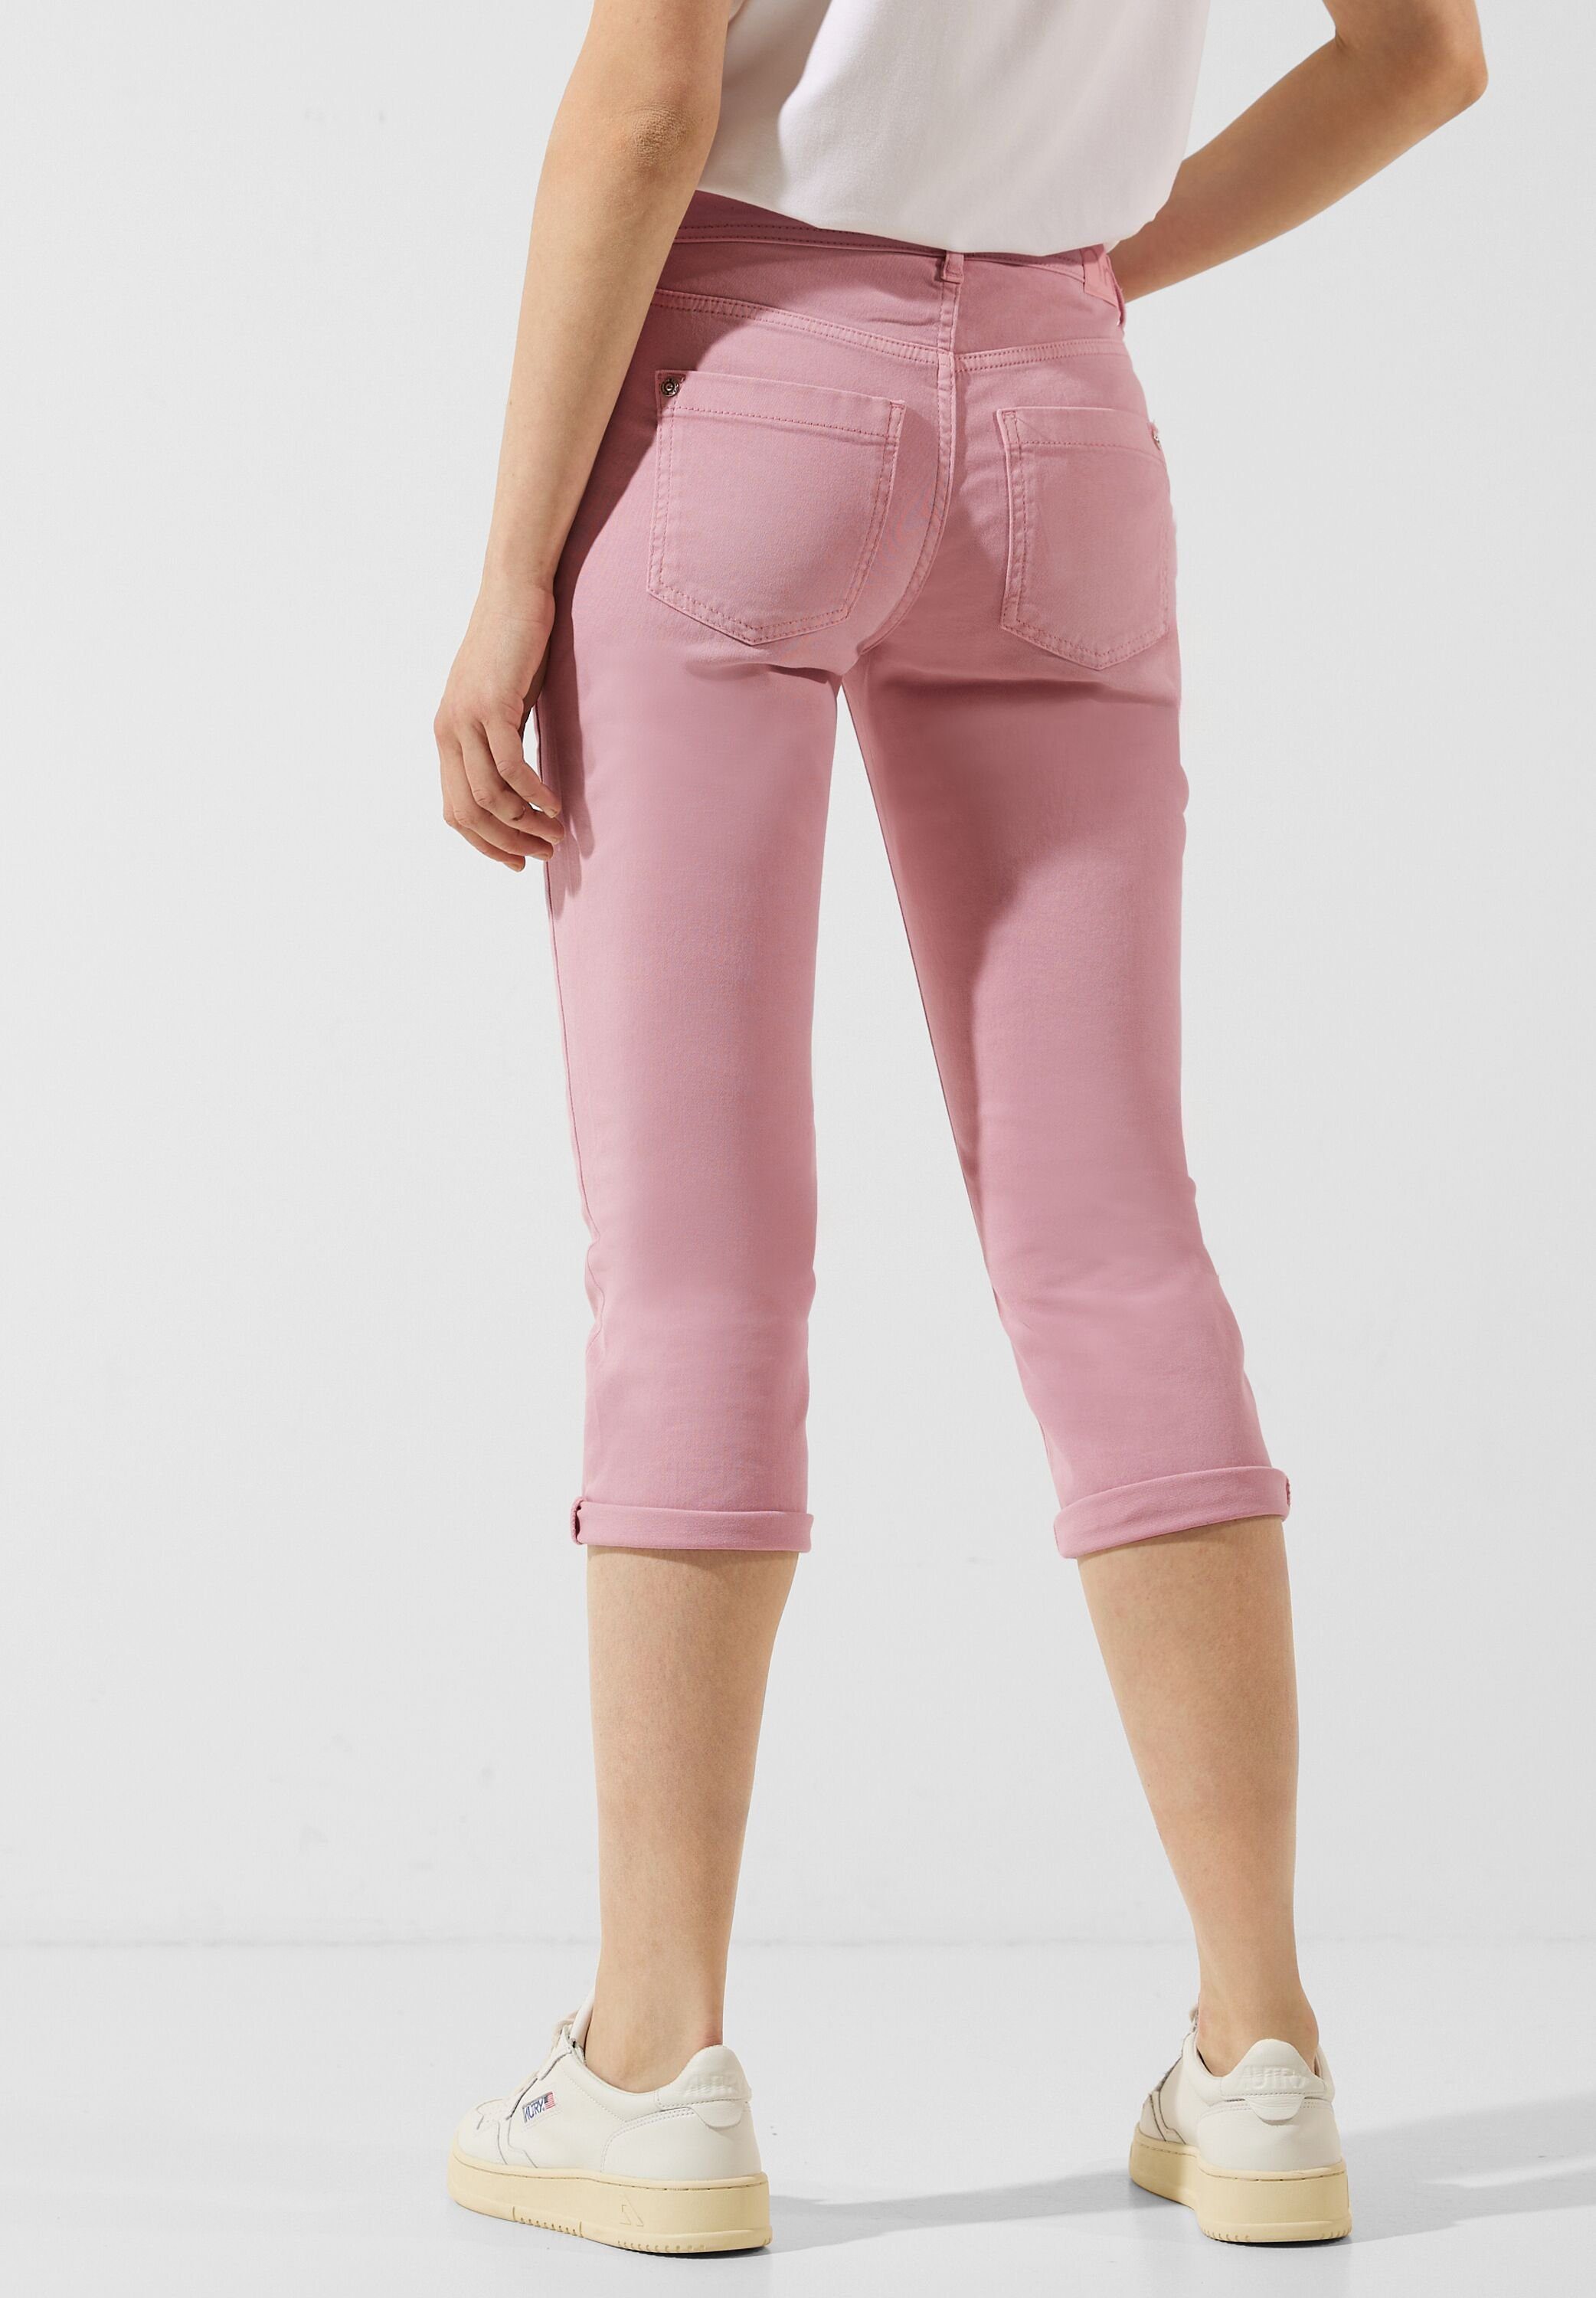 Rosa Jeans für Damen online kaufen » Pinke Jeans | OTTO